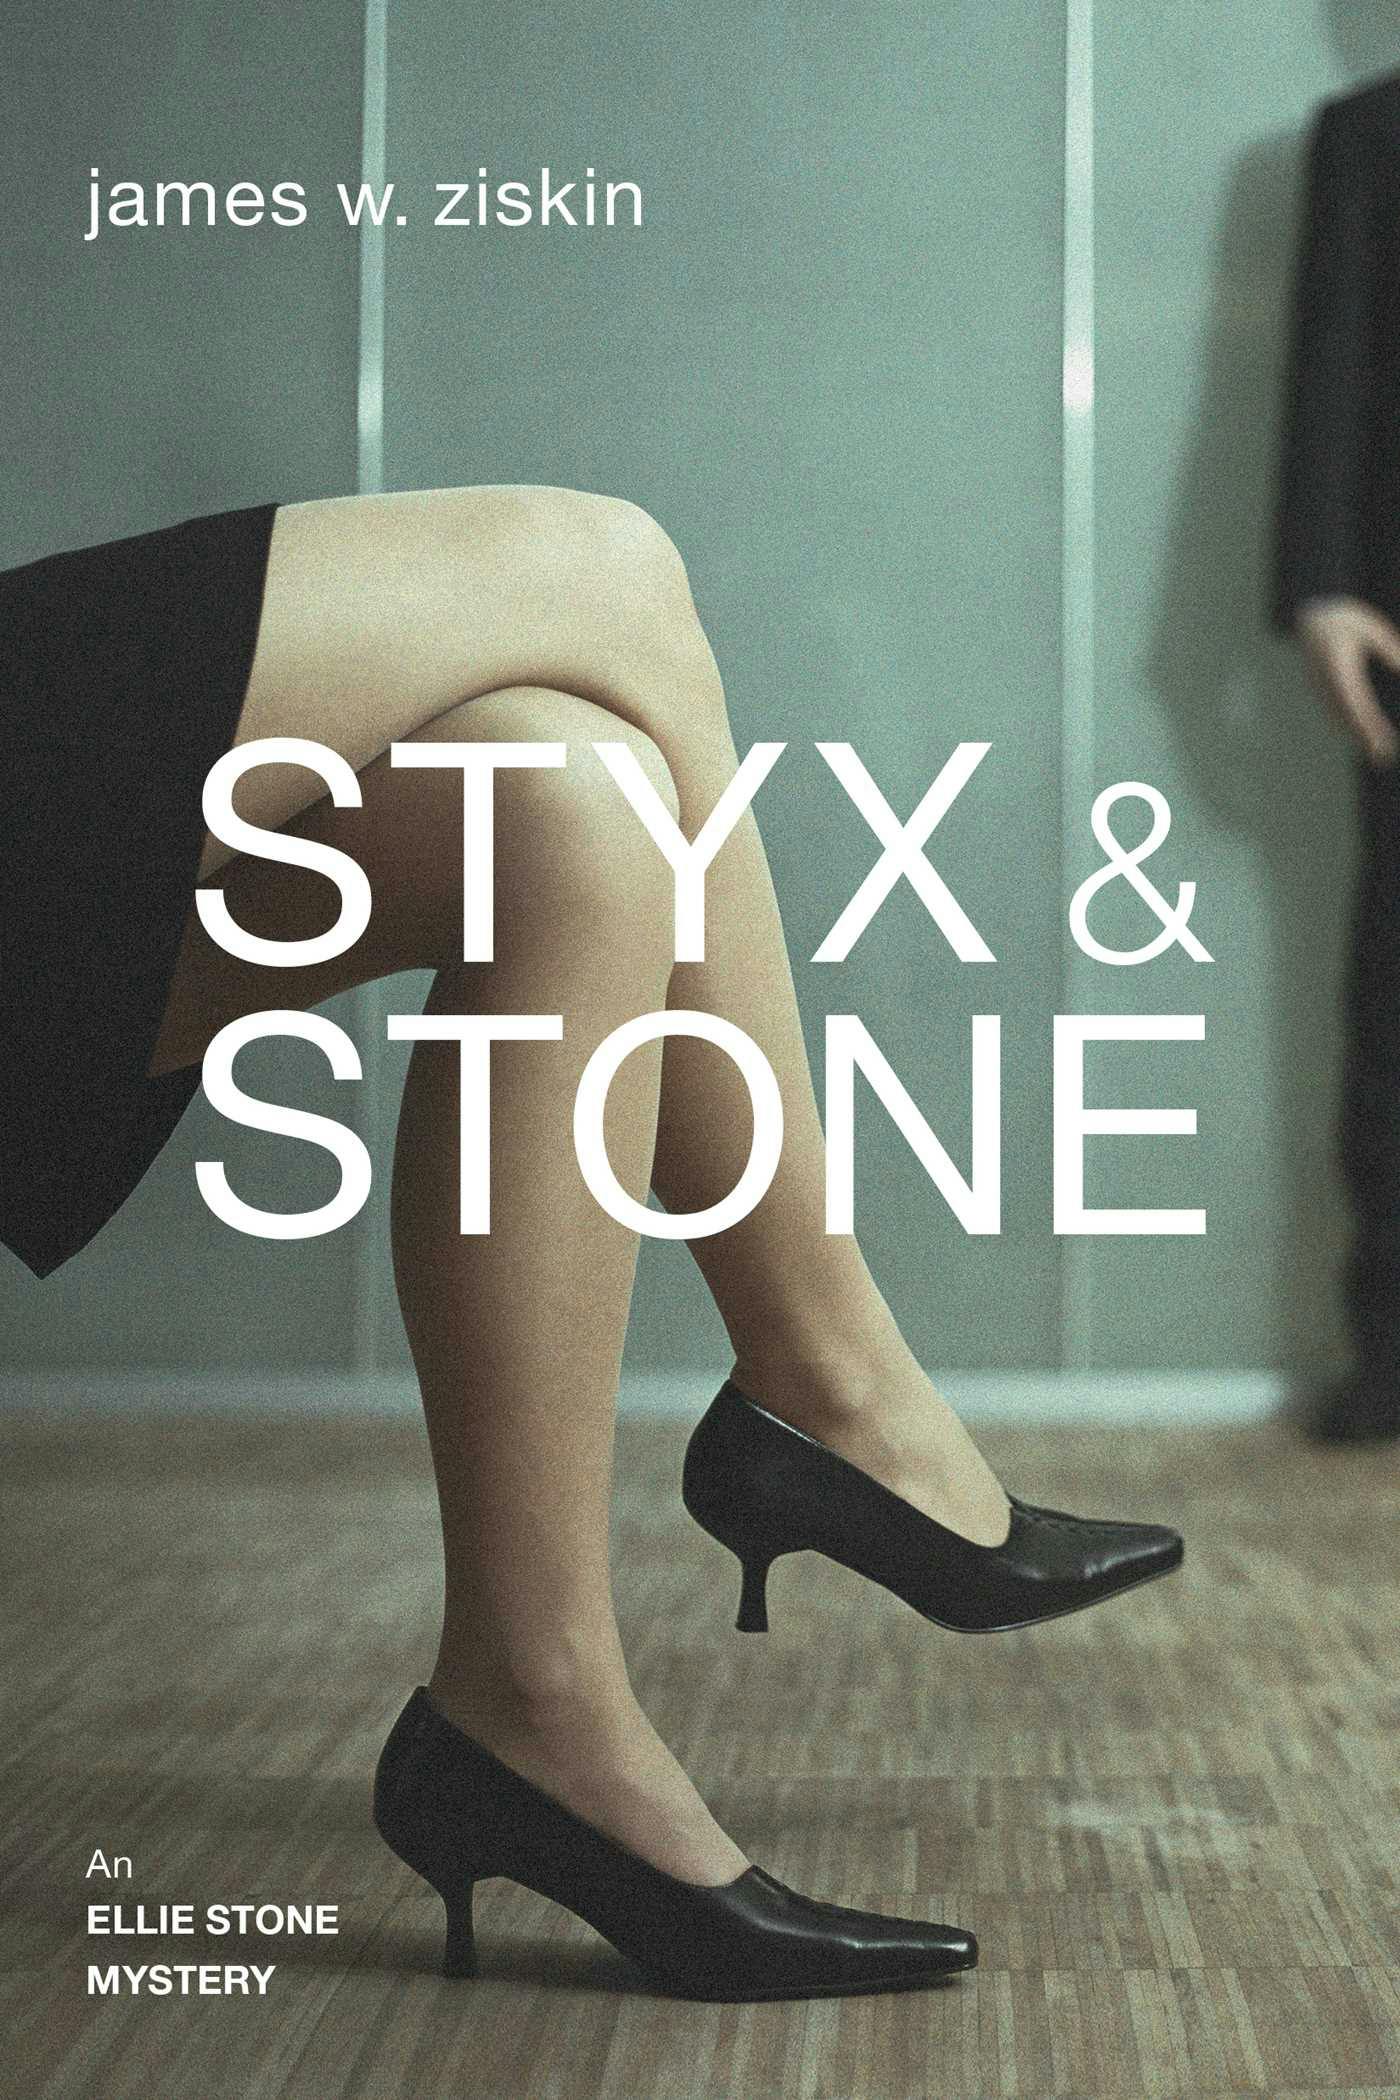 Styx & Stone: An Ellie Stone Mystery - James W. Ziskin